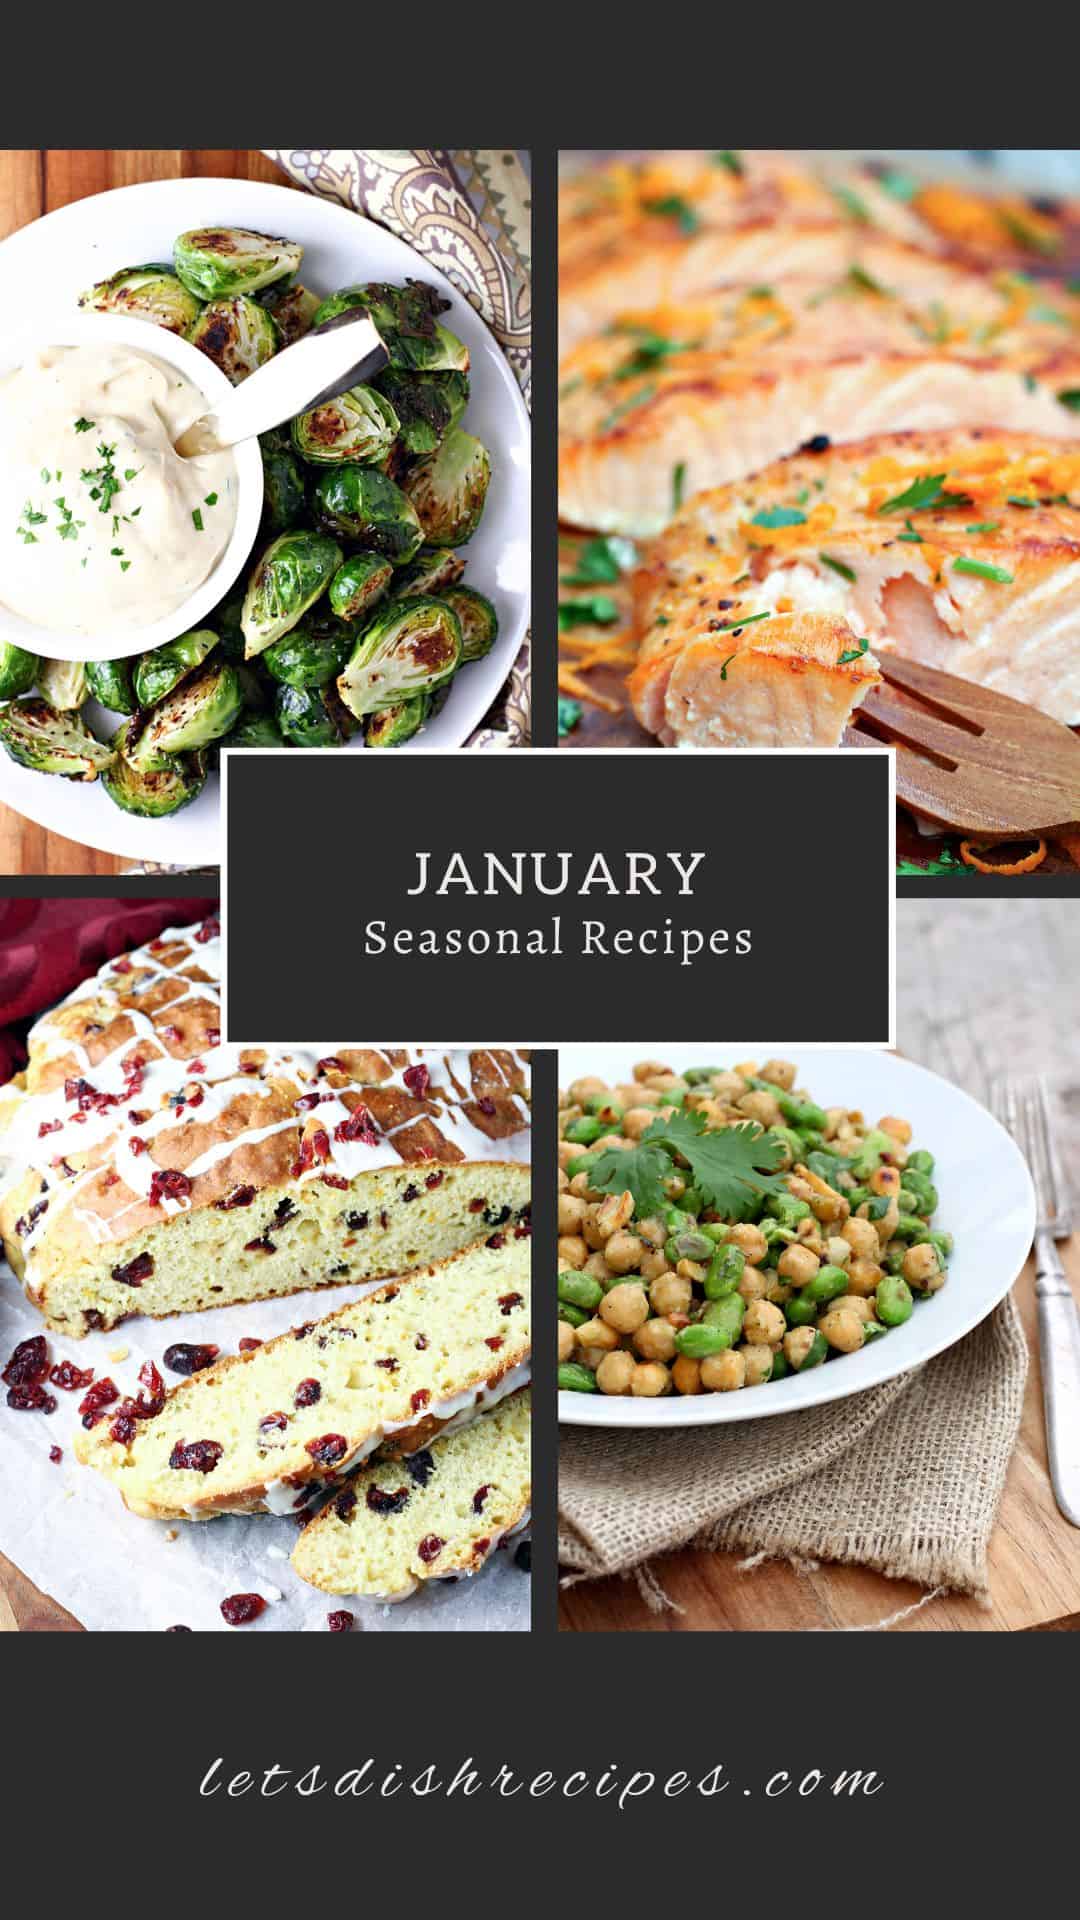 In Season Recipes: January